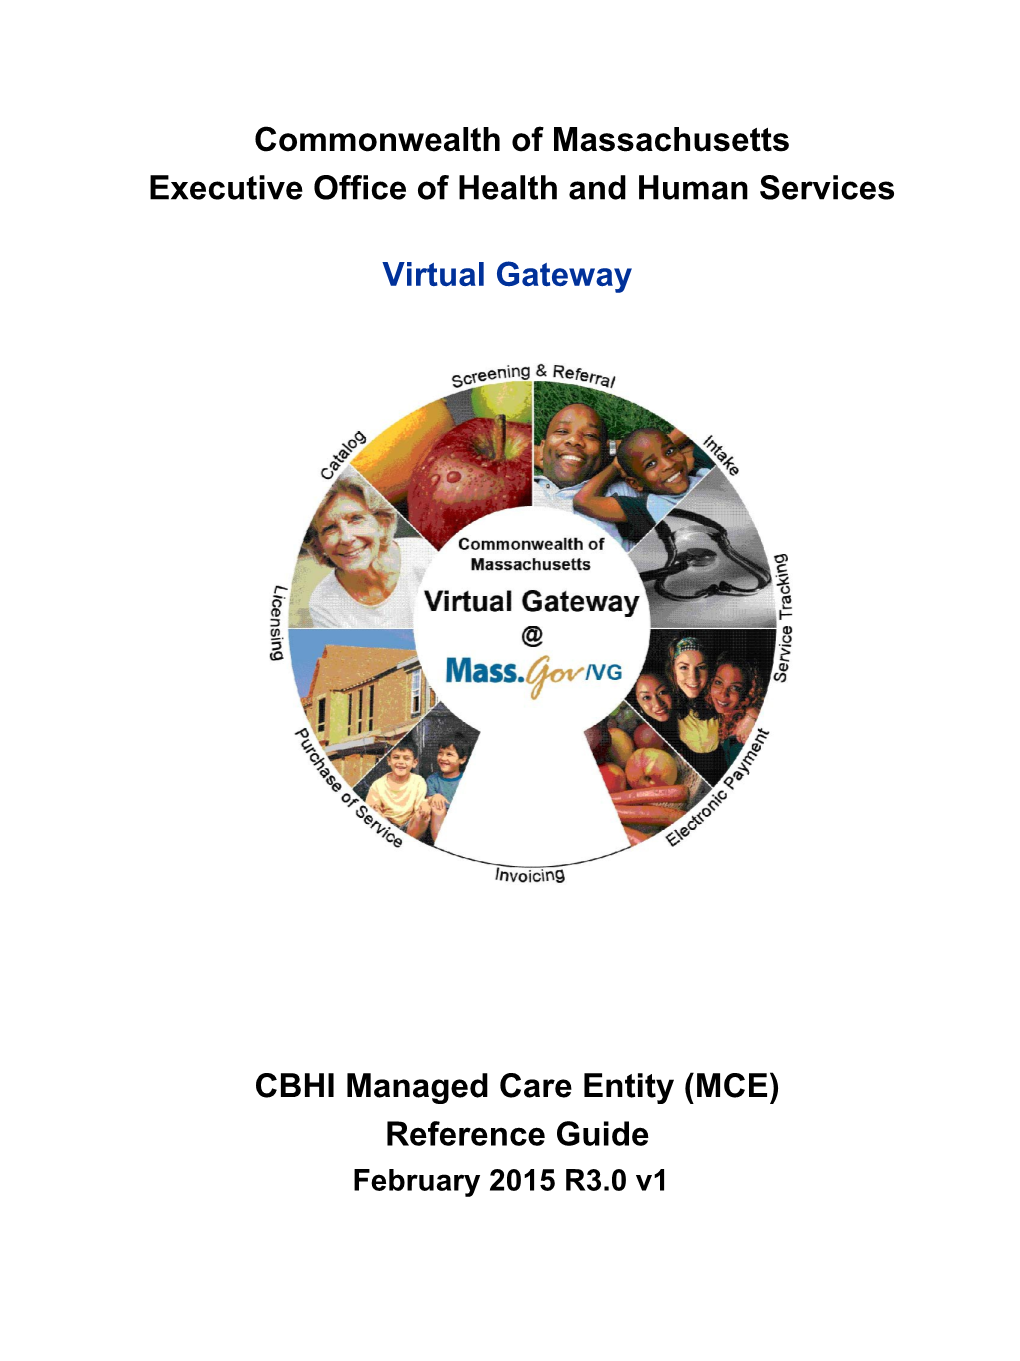 CBHI Managed Care Entity Job Aid